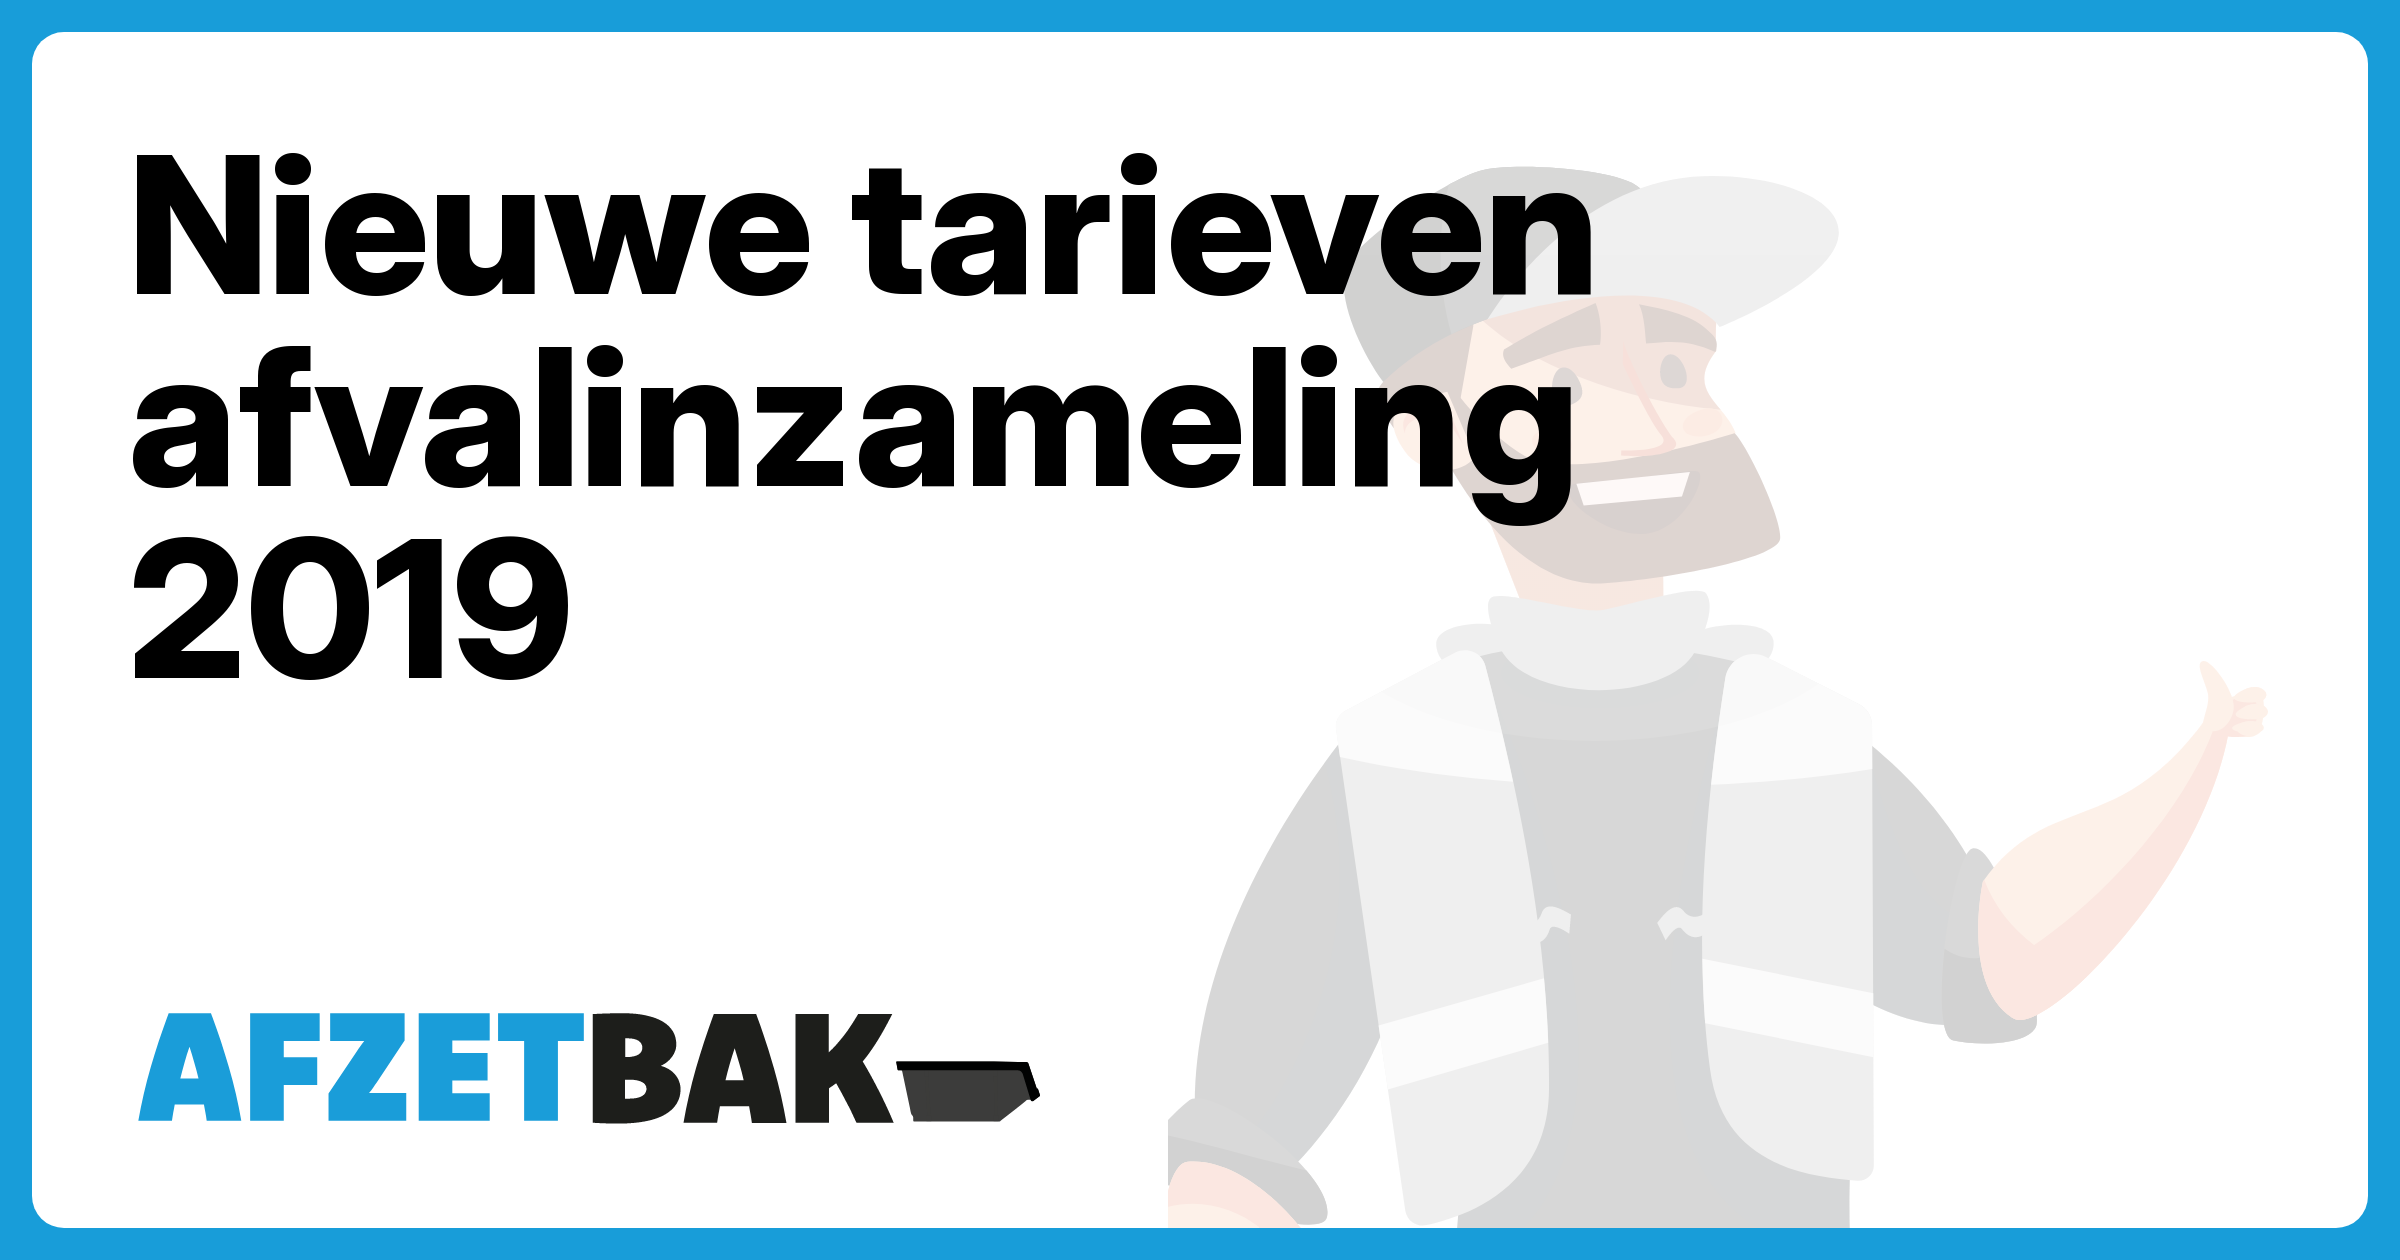 Nieuwe tarieven afvalinzameling 2019 - Afzetbak.nl